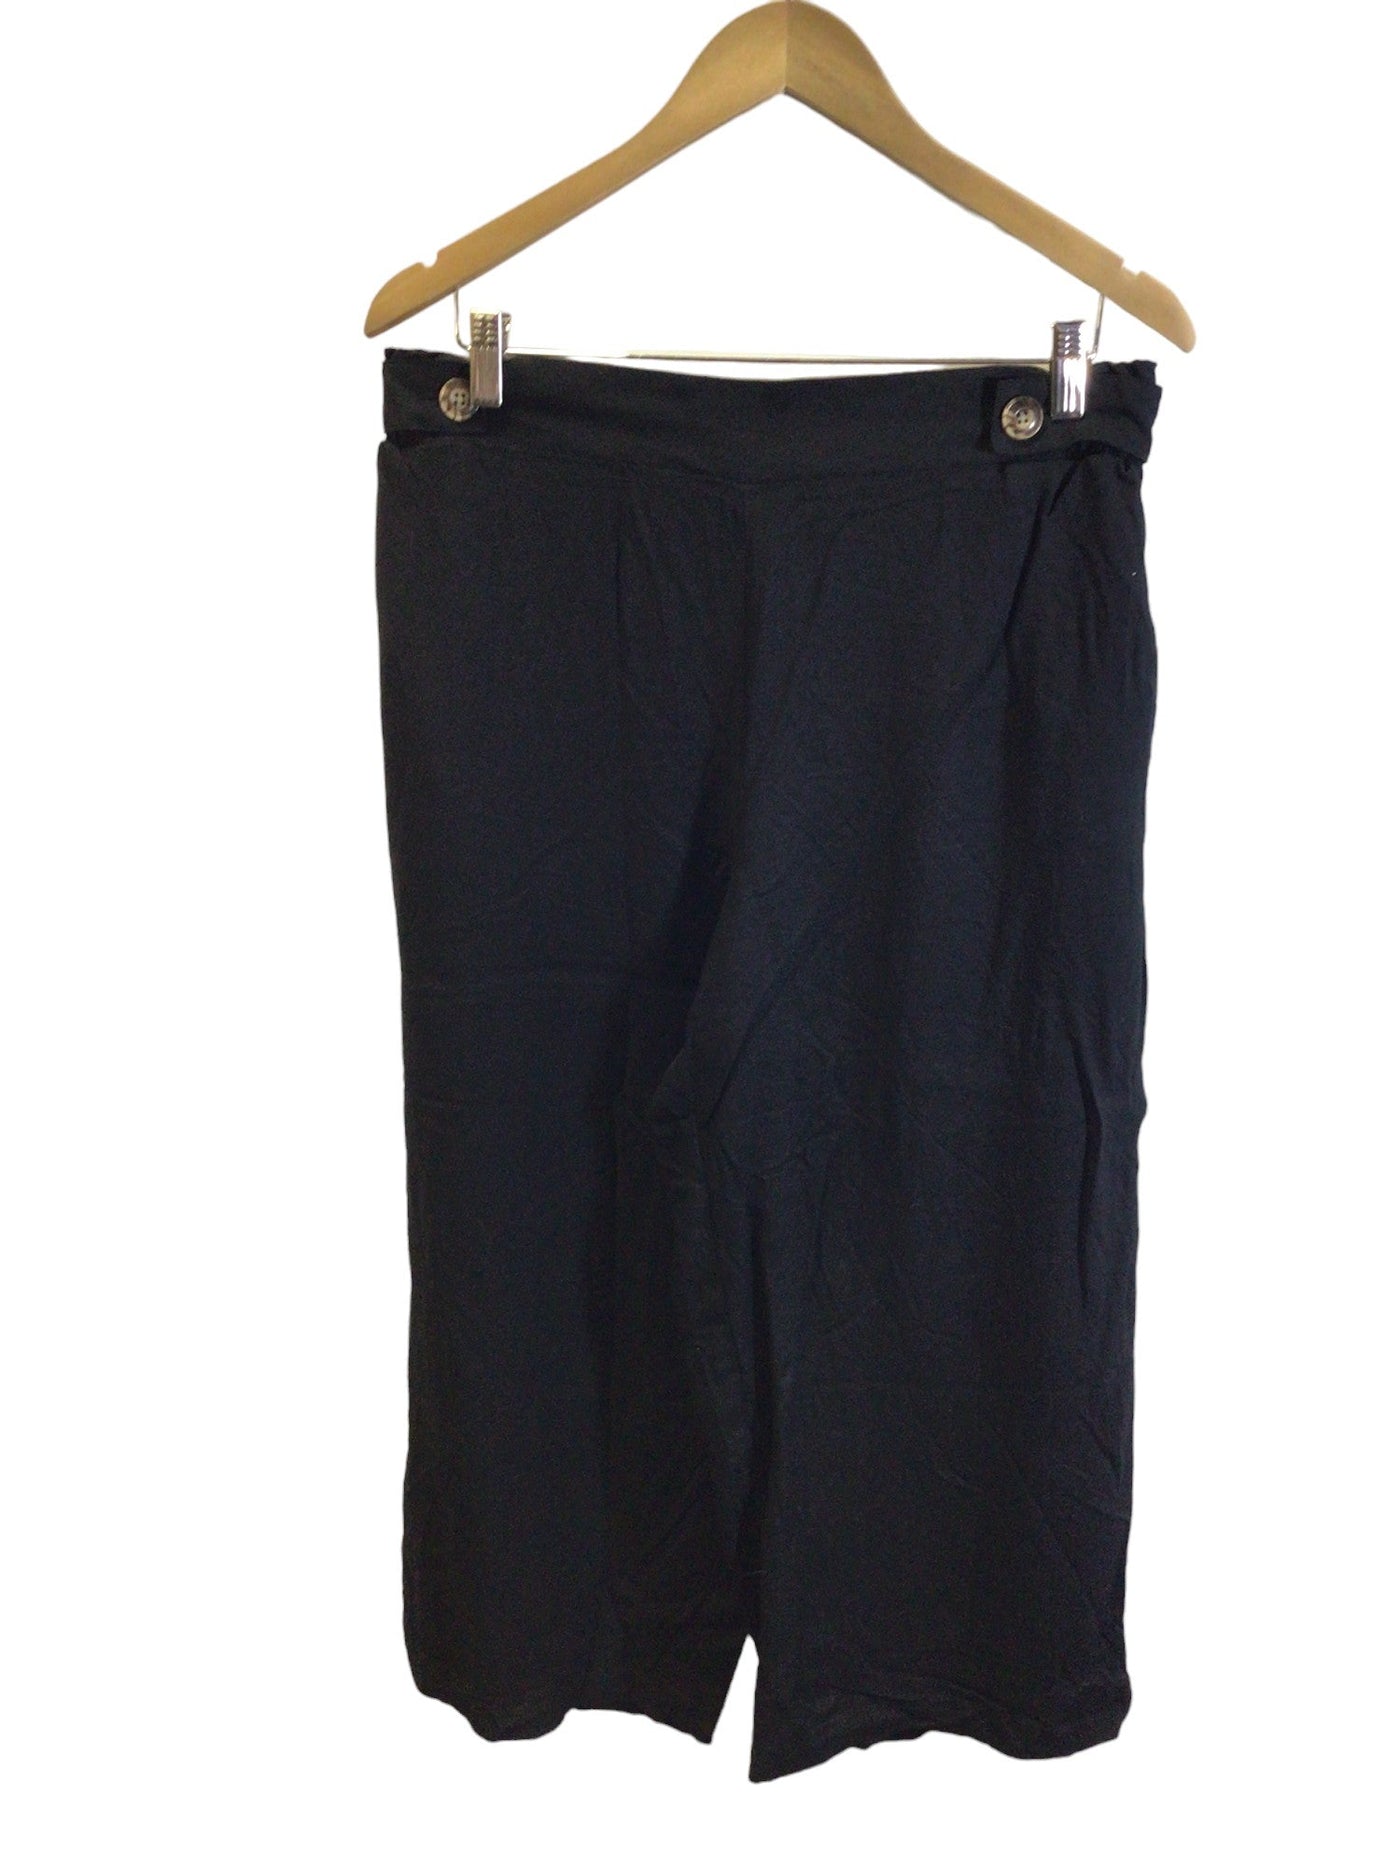 SUZY SHIER Women Work Pants Regular fit in Black - Size L | 12.39 $ KOOP